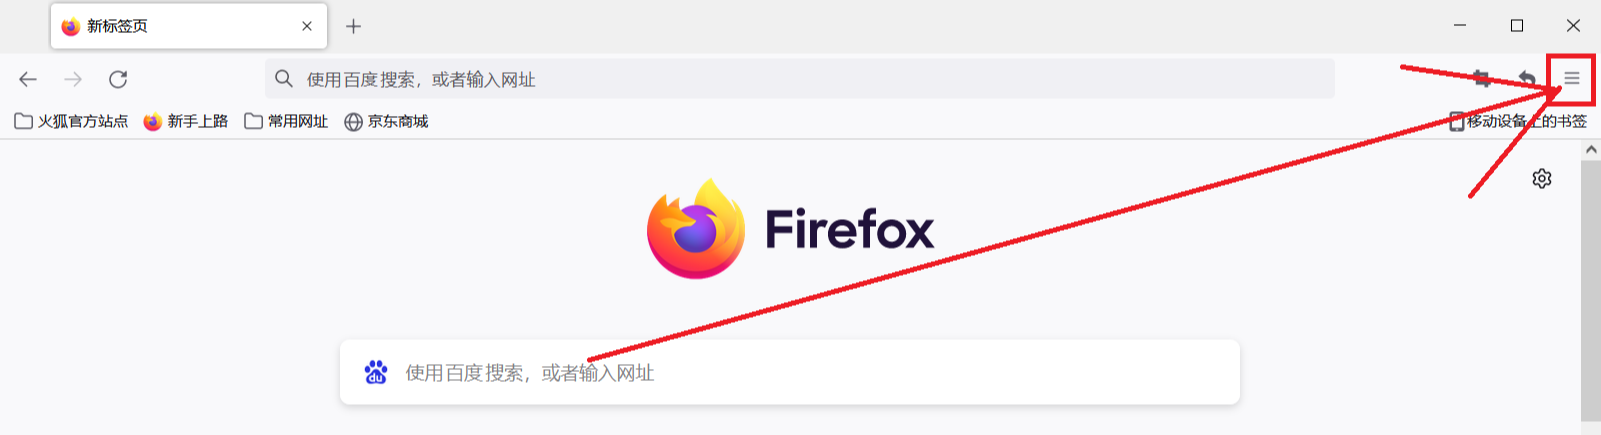 火狐浏览器主页怎么设置为常用网址